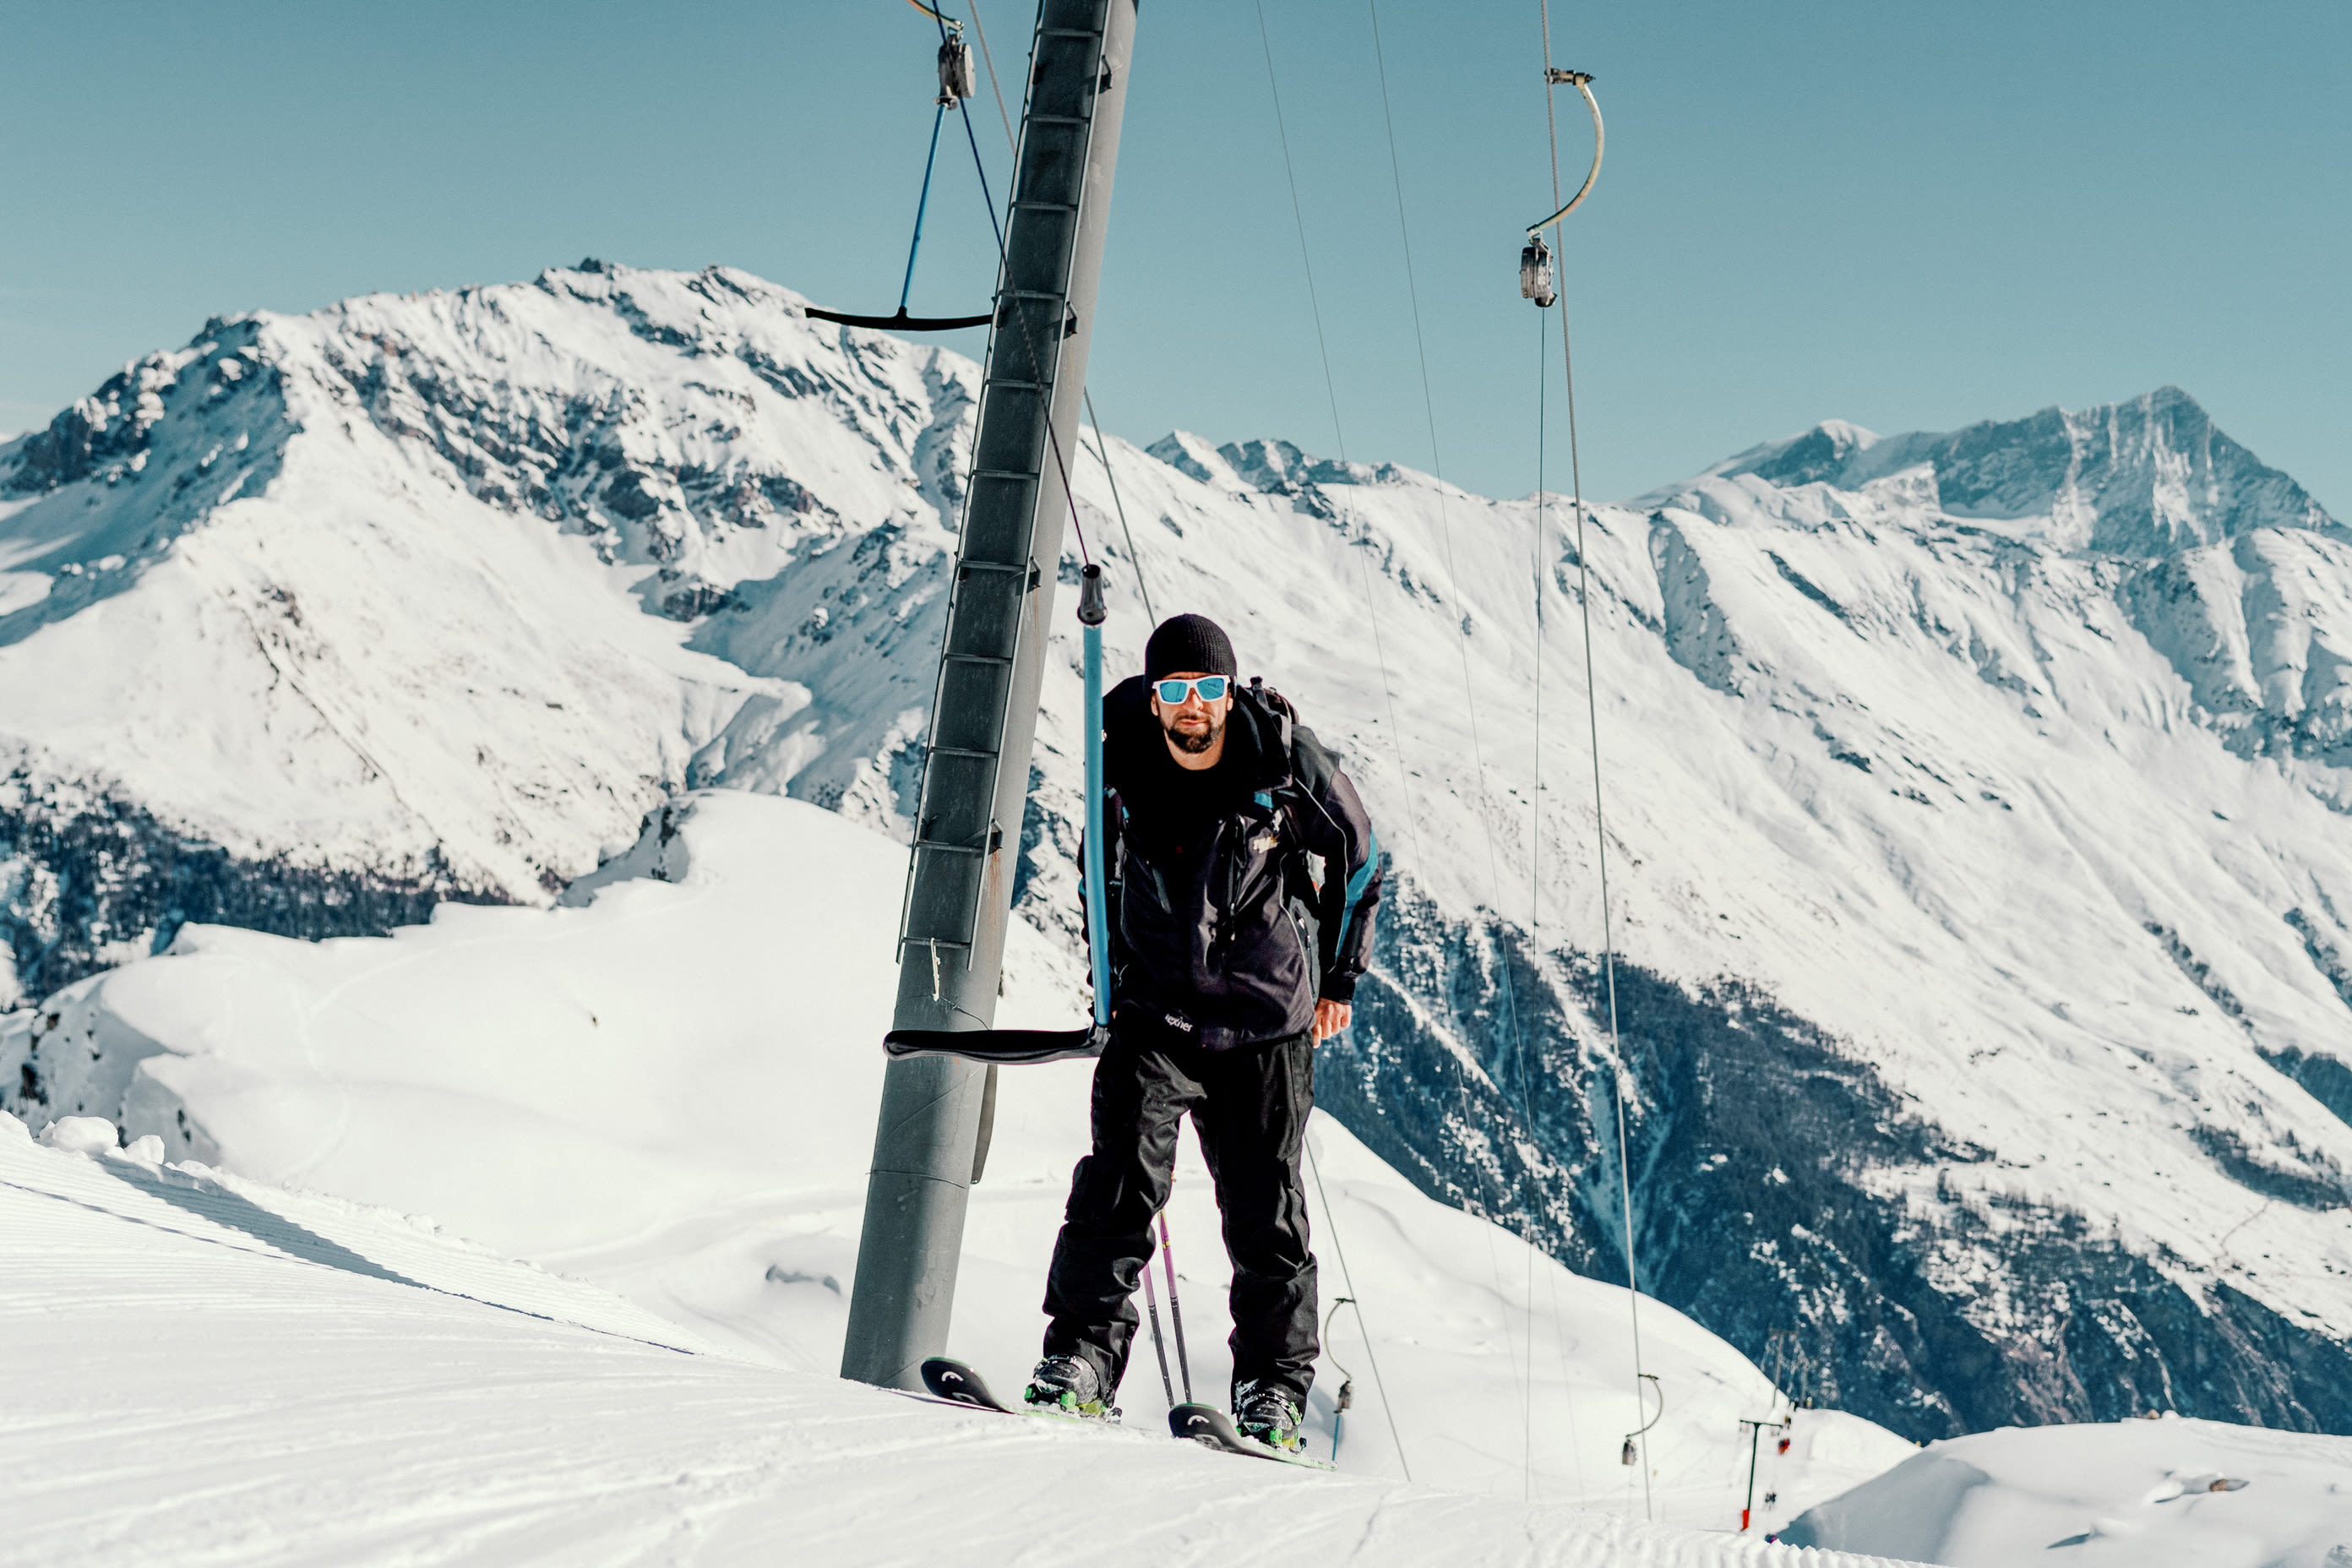 Marcio au téléski avec une vue sur le sommet, Valais, Suisse